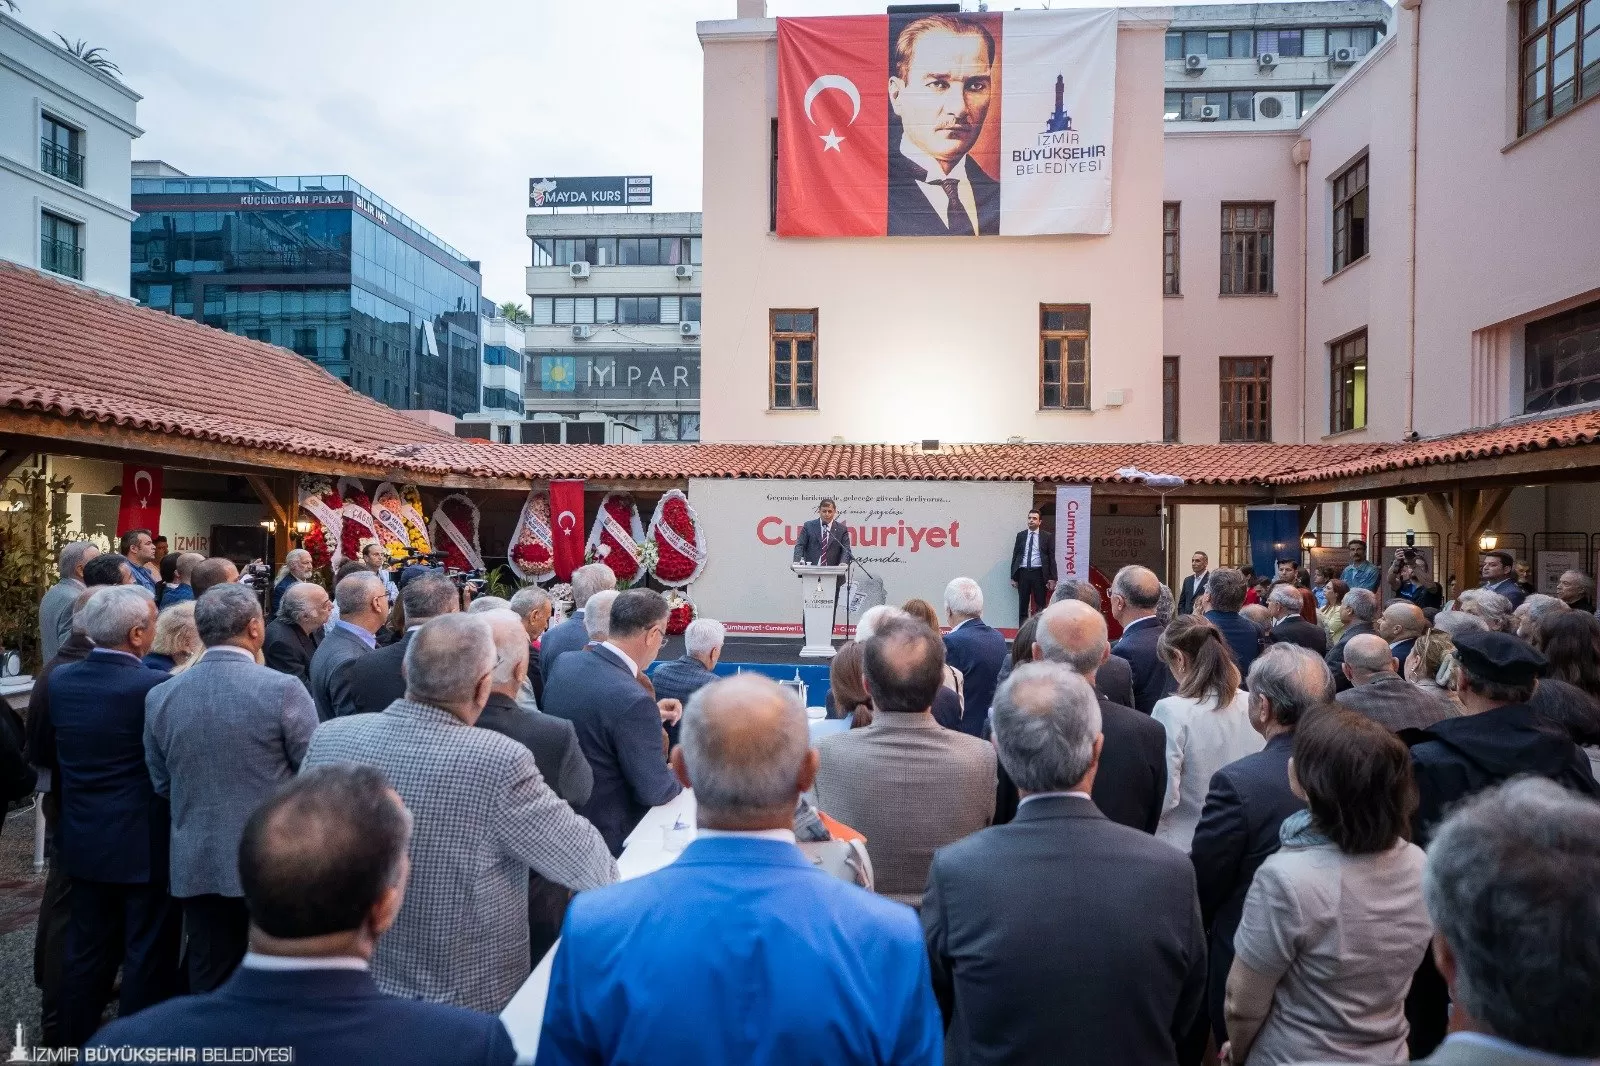 İzmir Büyükşehir Belediyesi, Cumhuriyet Gazetesi'nin 100. yılı için Ahmet Piriştina Kent Arşivi ve Müzesi'nde (APİKAM) görkemli bir programa ev sahipliği yaptı